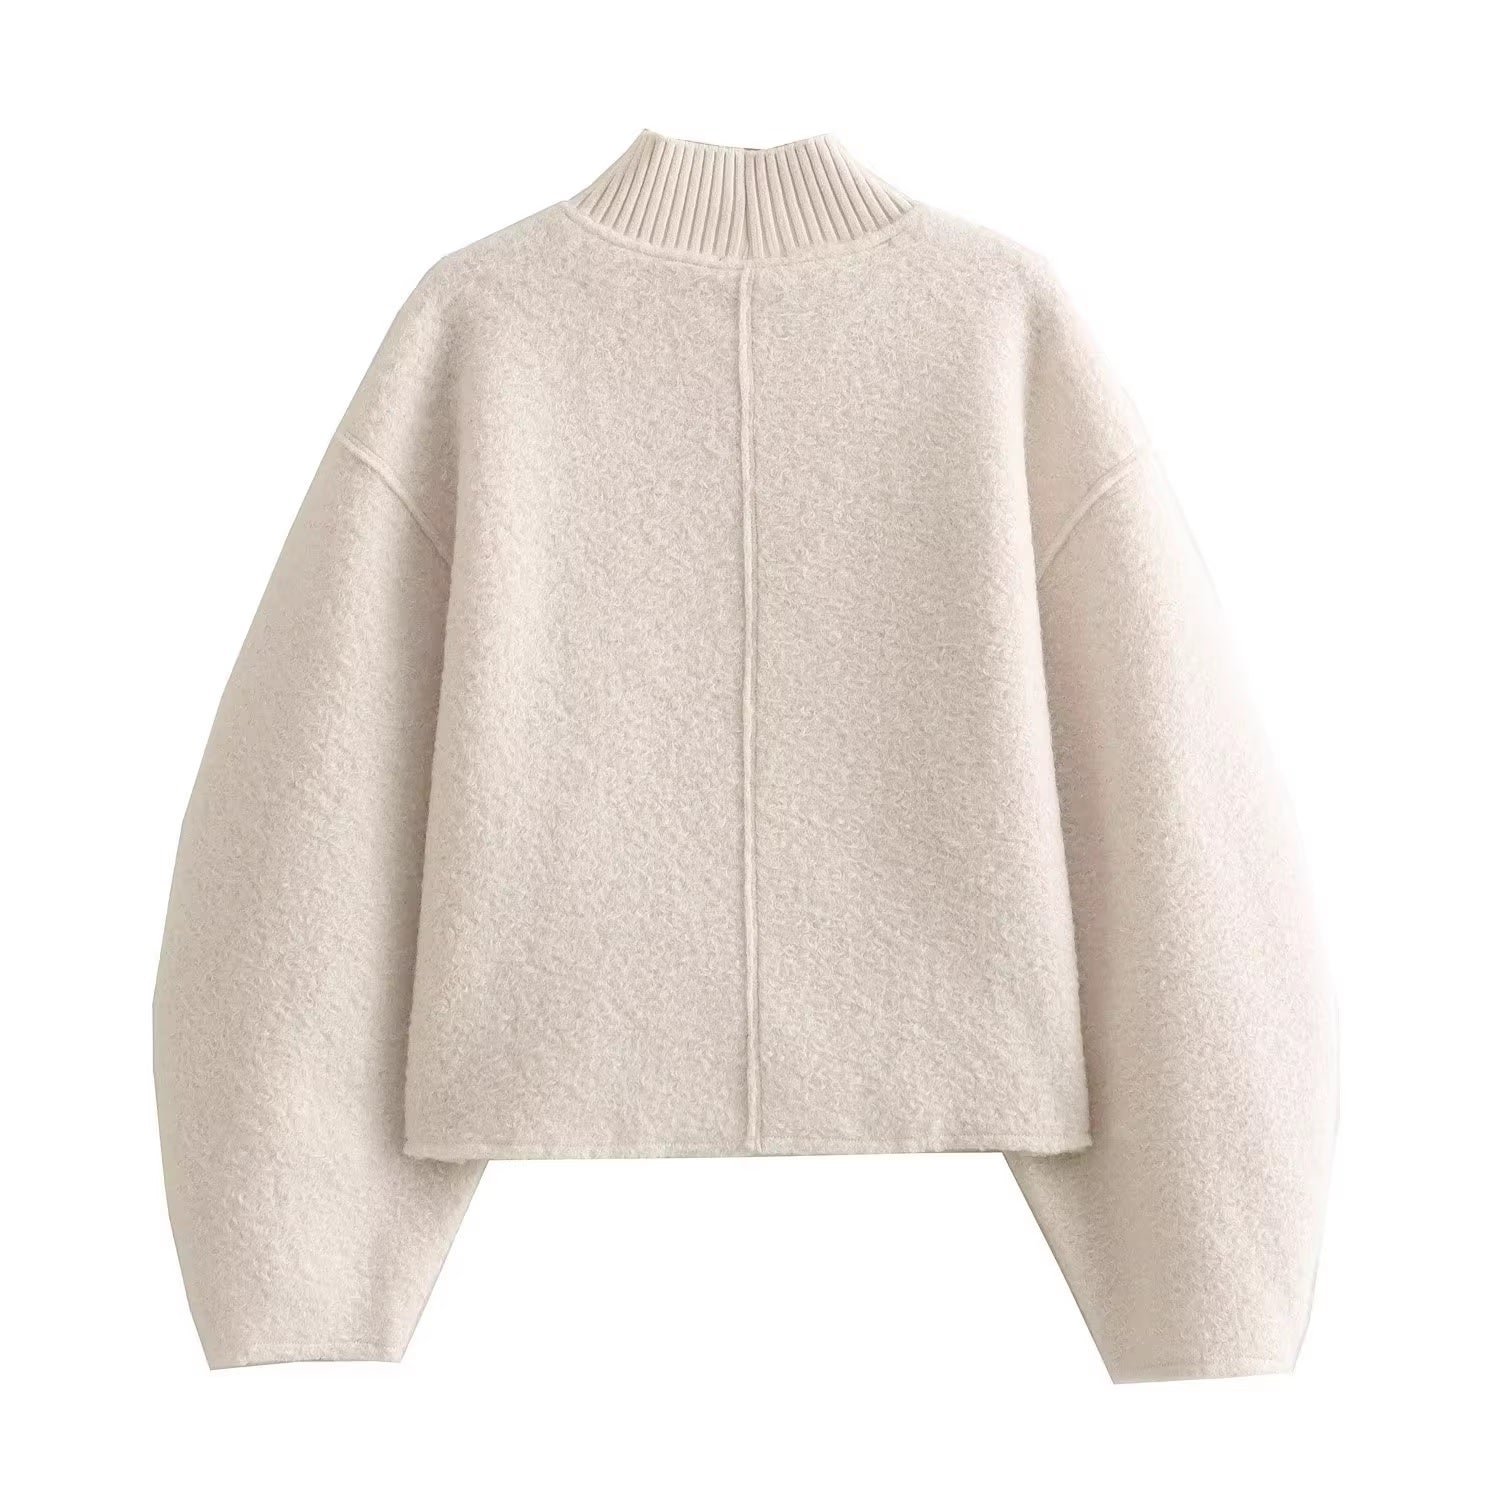 Дамски пуловер Ecru Bouclé 24'-Дамски пуловер Ecru Bouclé 24'-Thedresscode